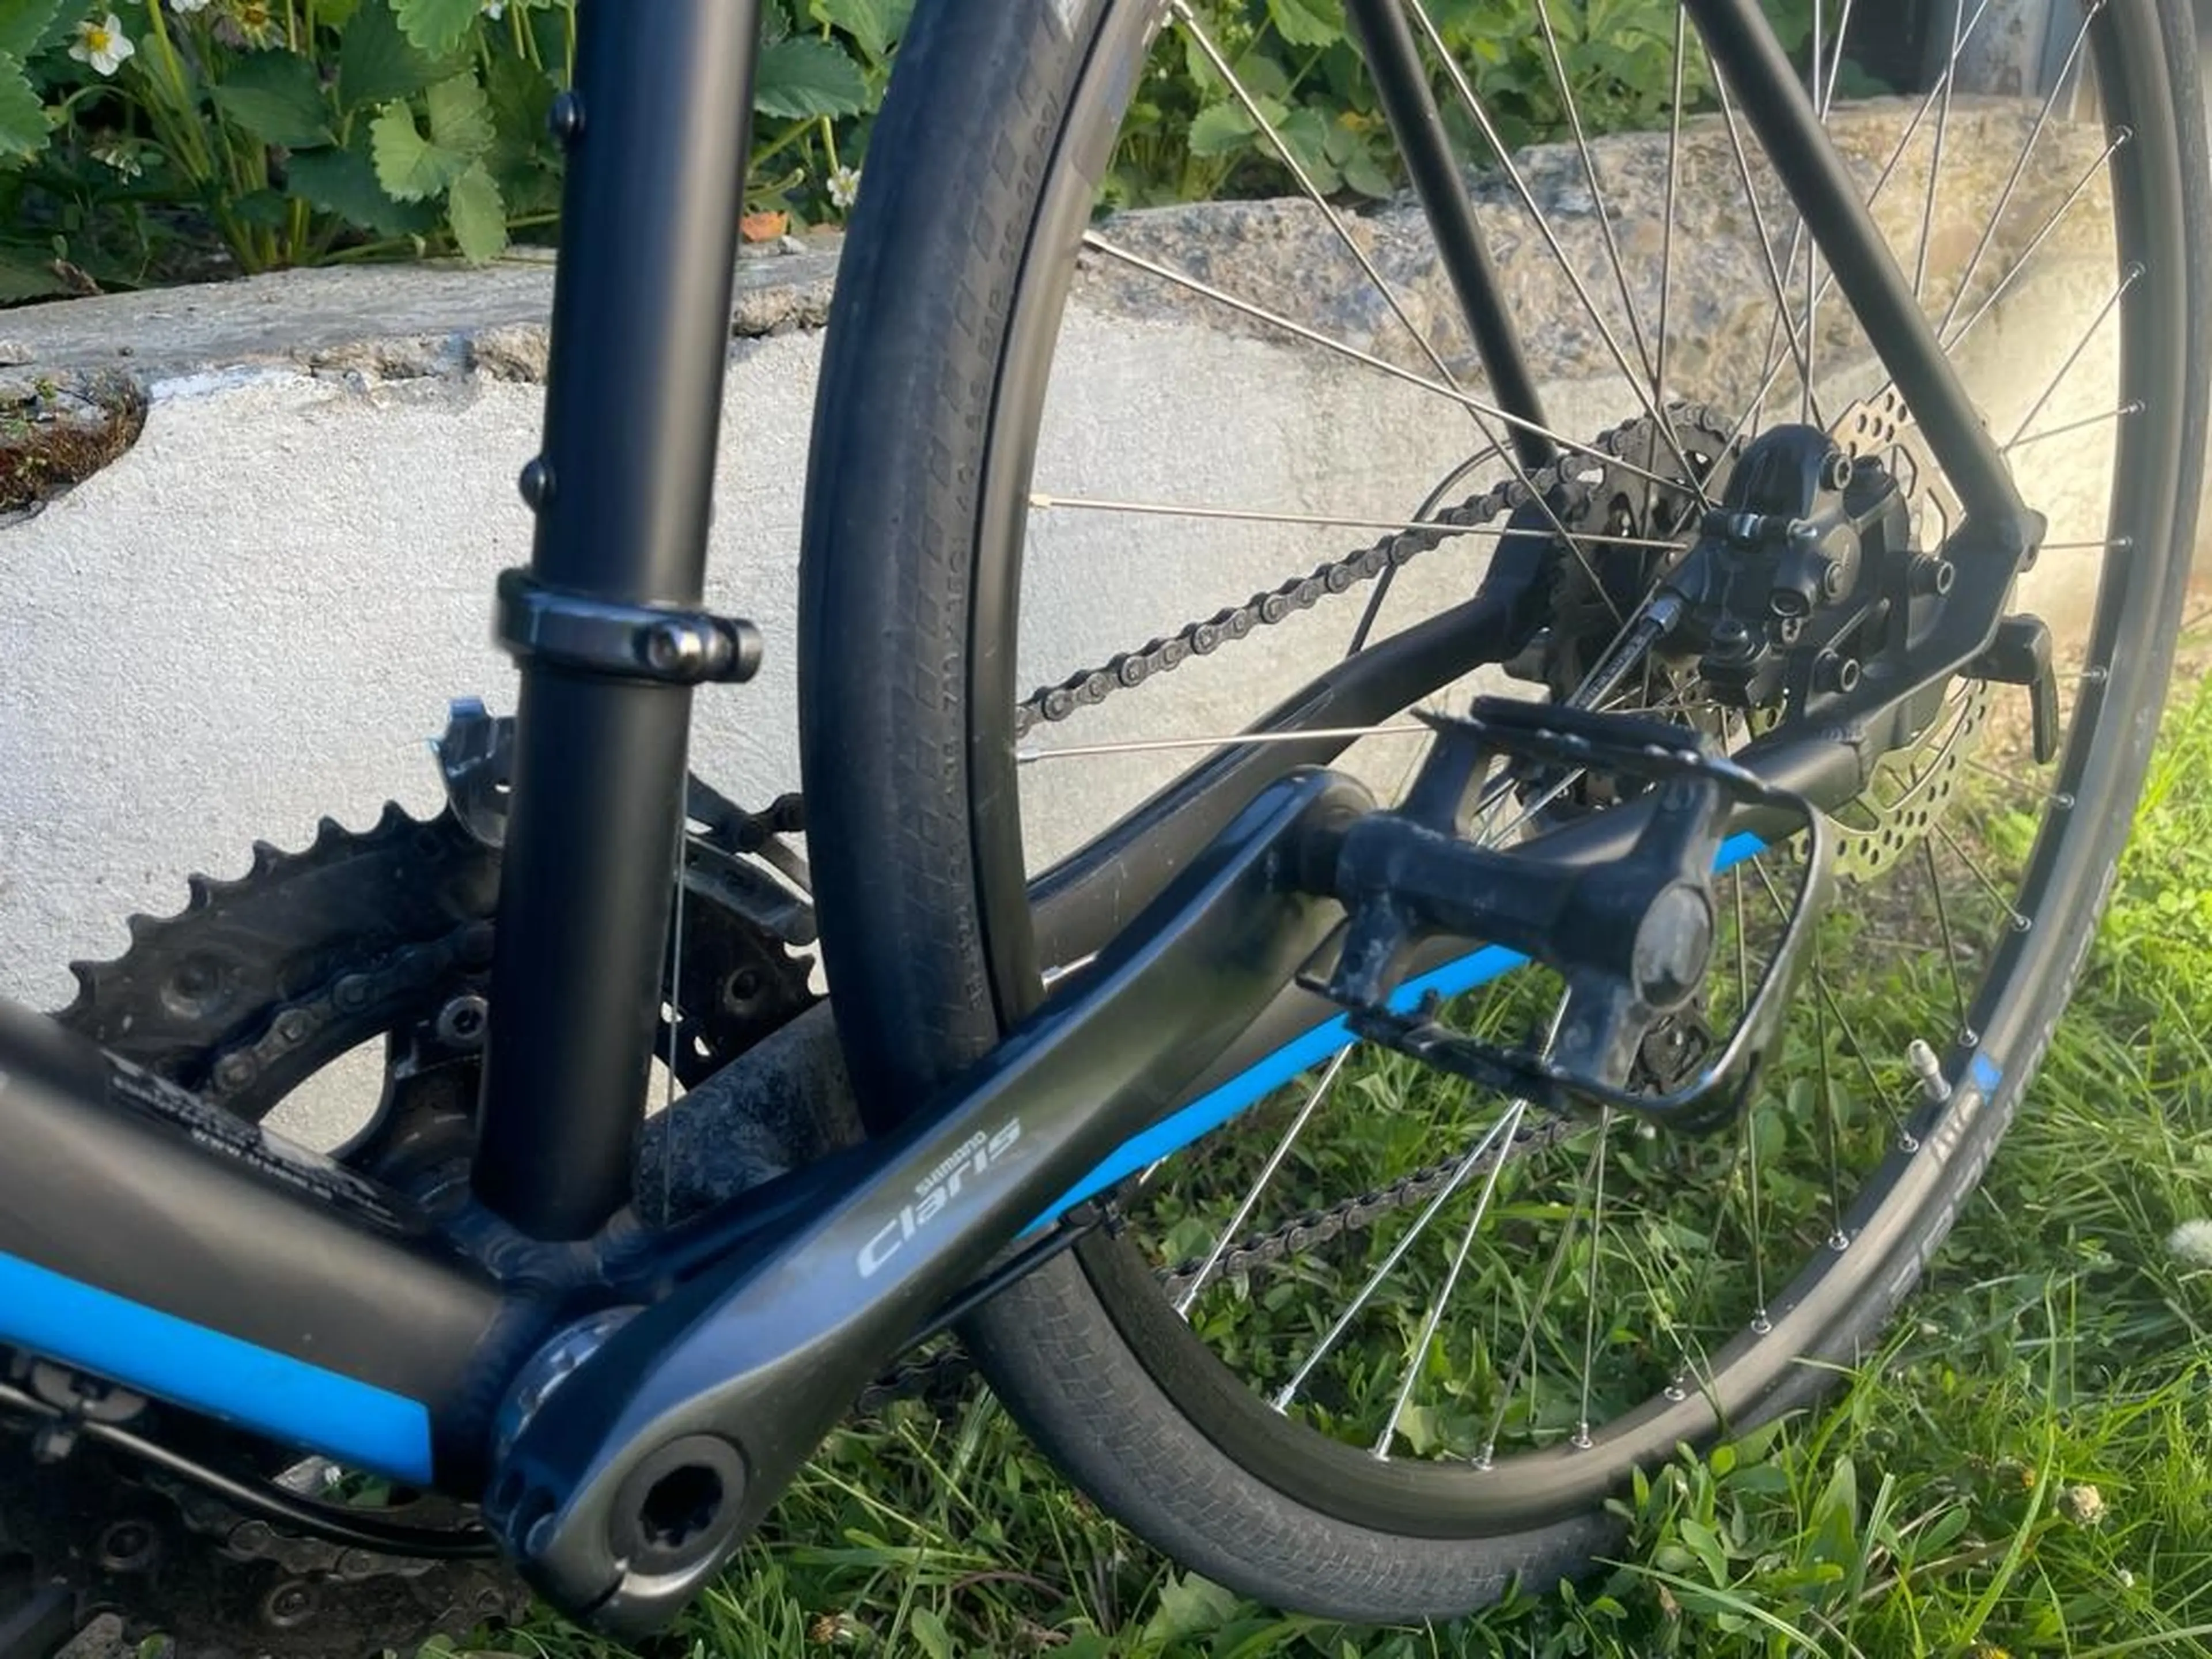 5. Bicicleta Cube SL Road 2019 Black´n´Blue road asfalt bike